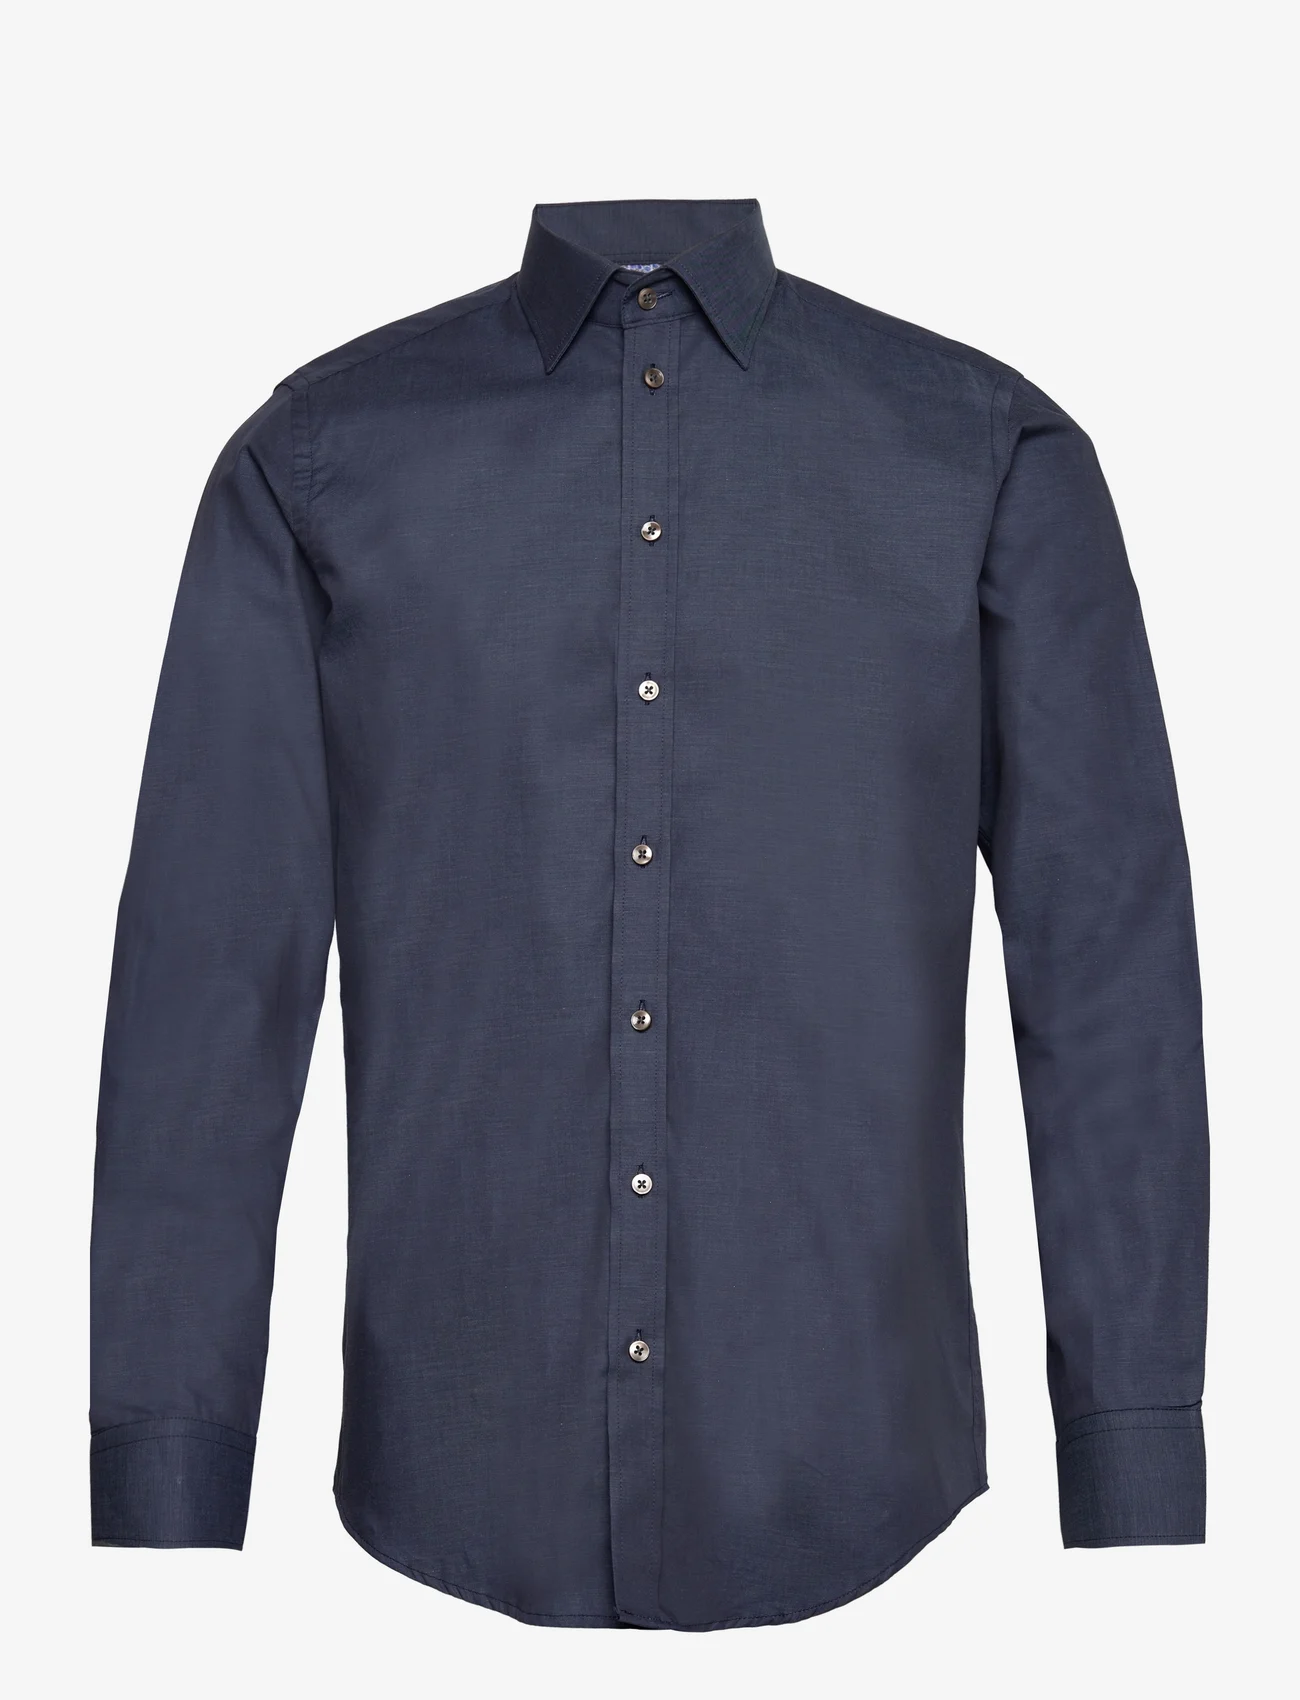 Bosweel Shirts Est. 1937 - Slim fit Mens shirt - basic shirts - dark blue - 0